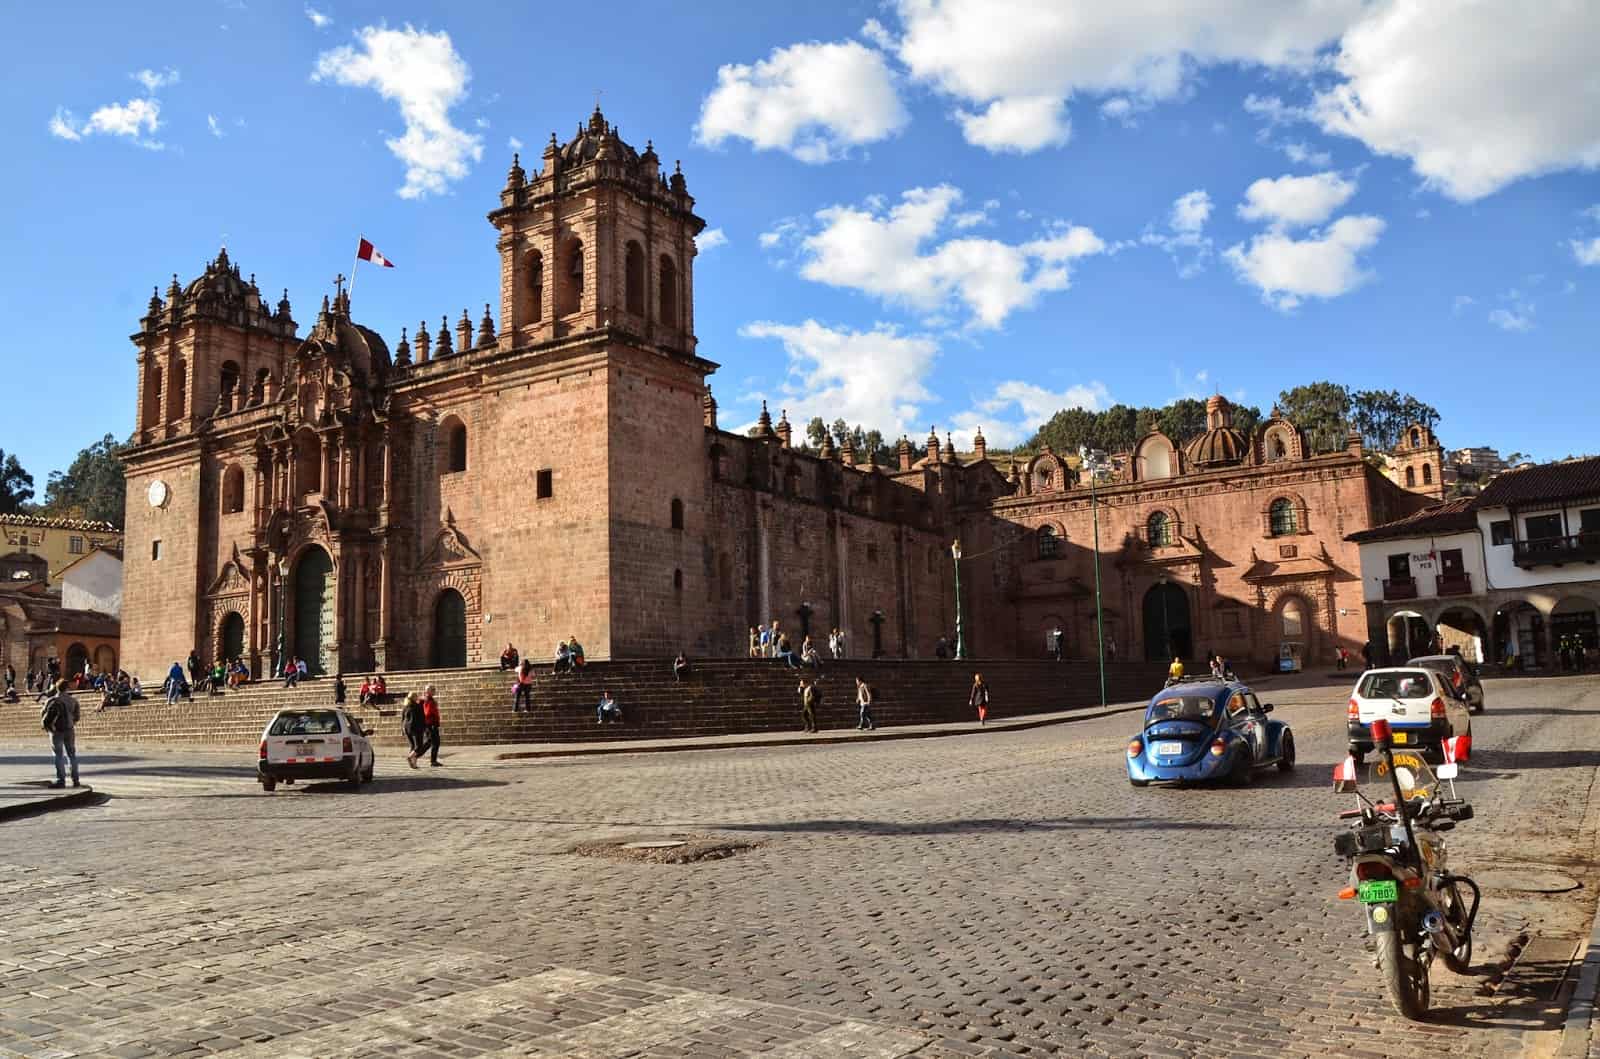 Catedral del Cusco on Plaza de Armas in Cusco, Peru